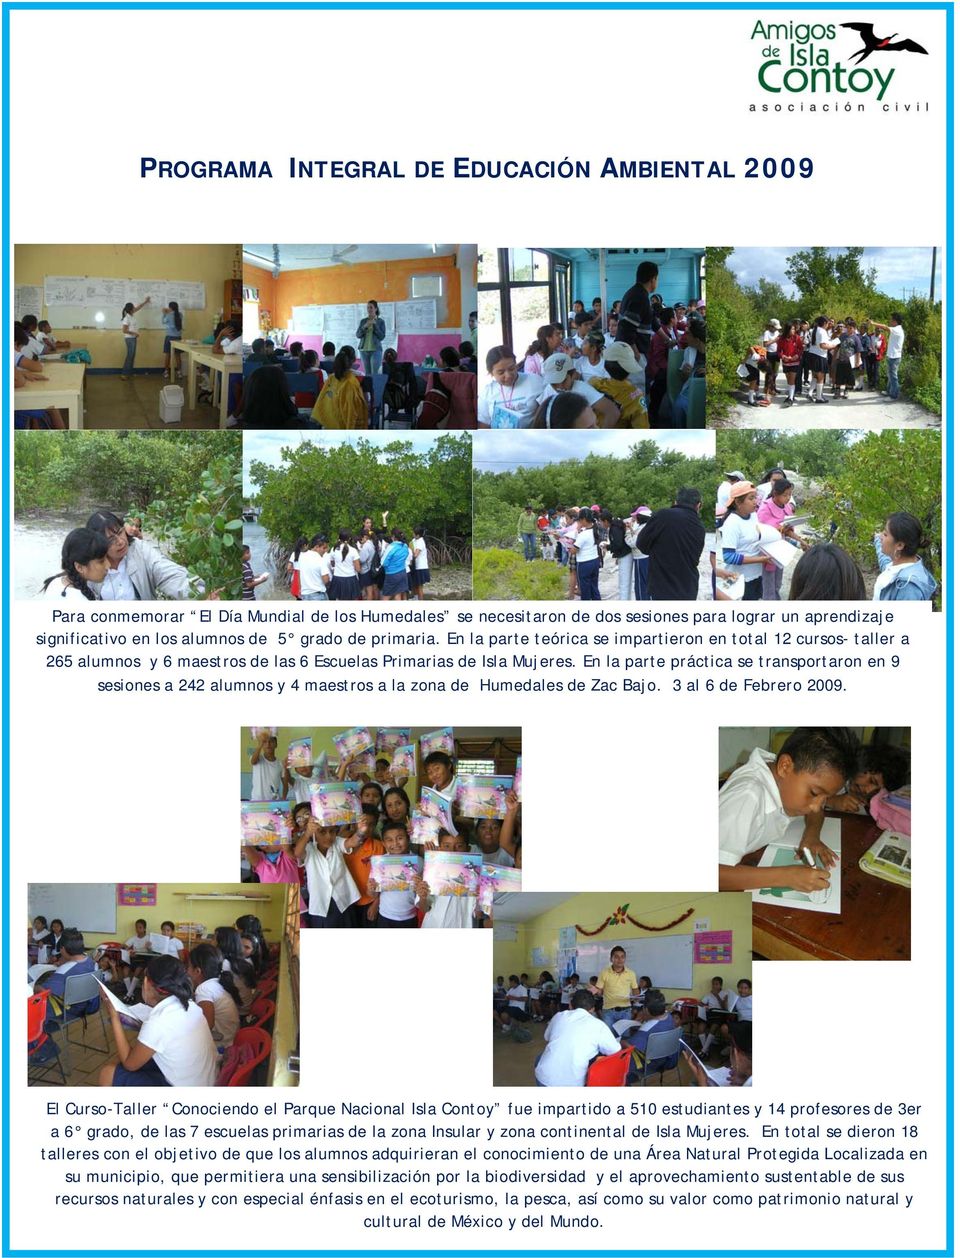 En la parte práctica se transportaron en 9 sesiones a 242 alumnos y 4 maestros a la zona de Humedales de Zac Bajo. 3 al 6 de Febrero 2009.